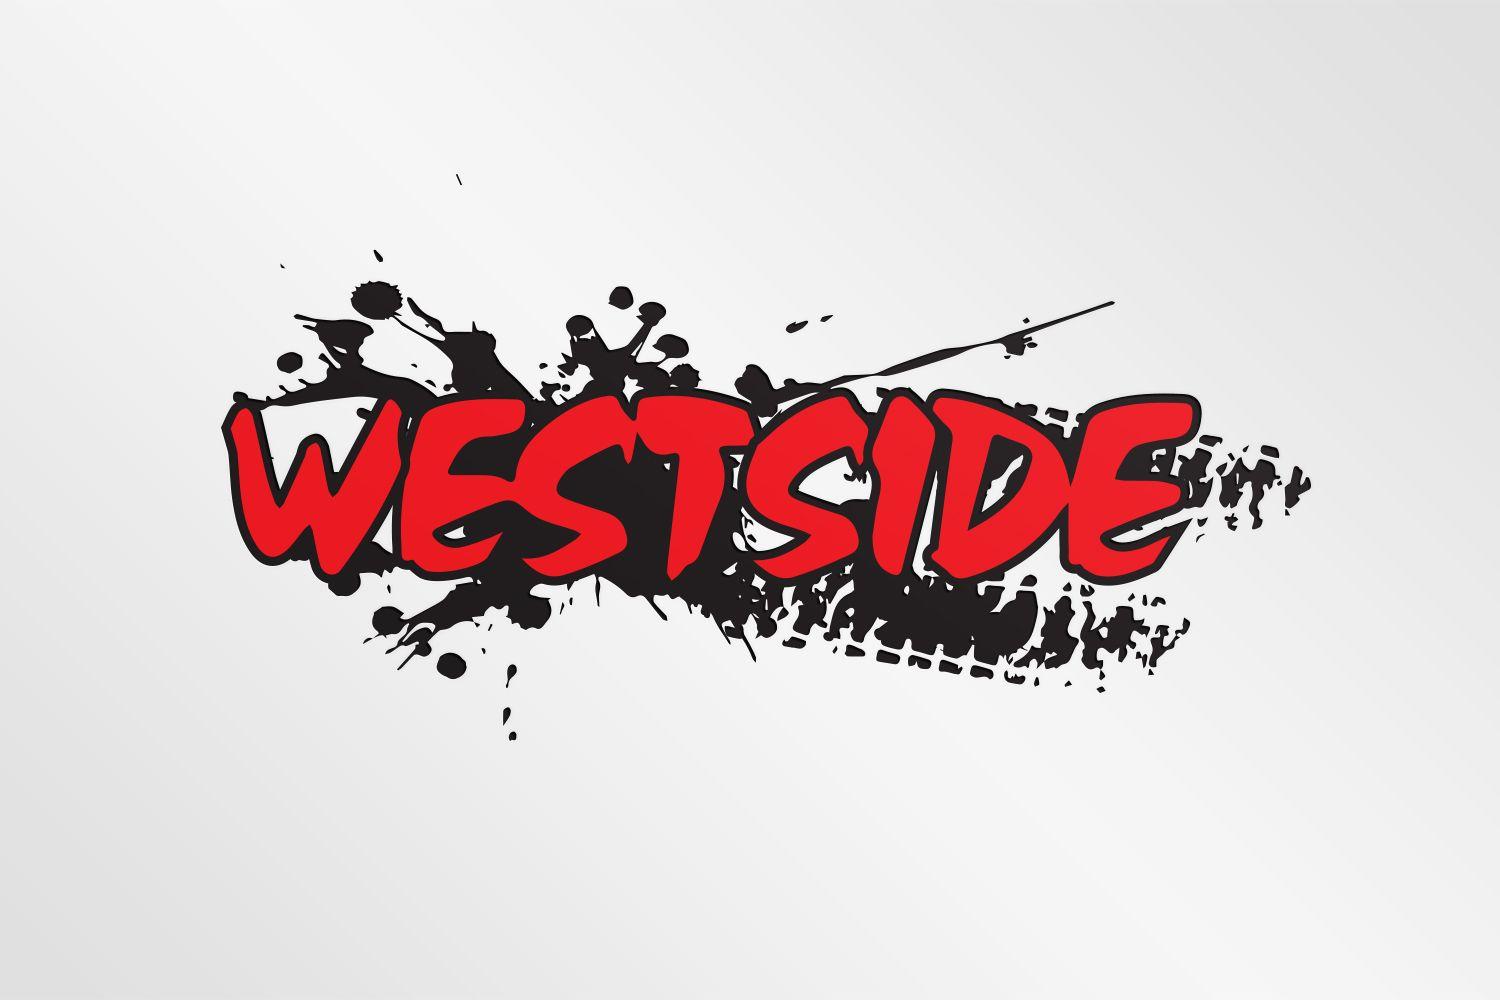 Westside Logo - Bold, Serious, Motorcycle Part Logo Design for Westside or Westside ...